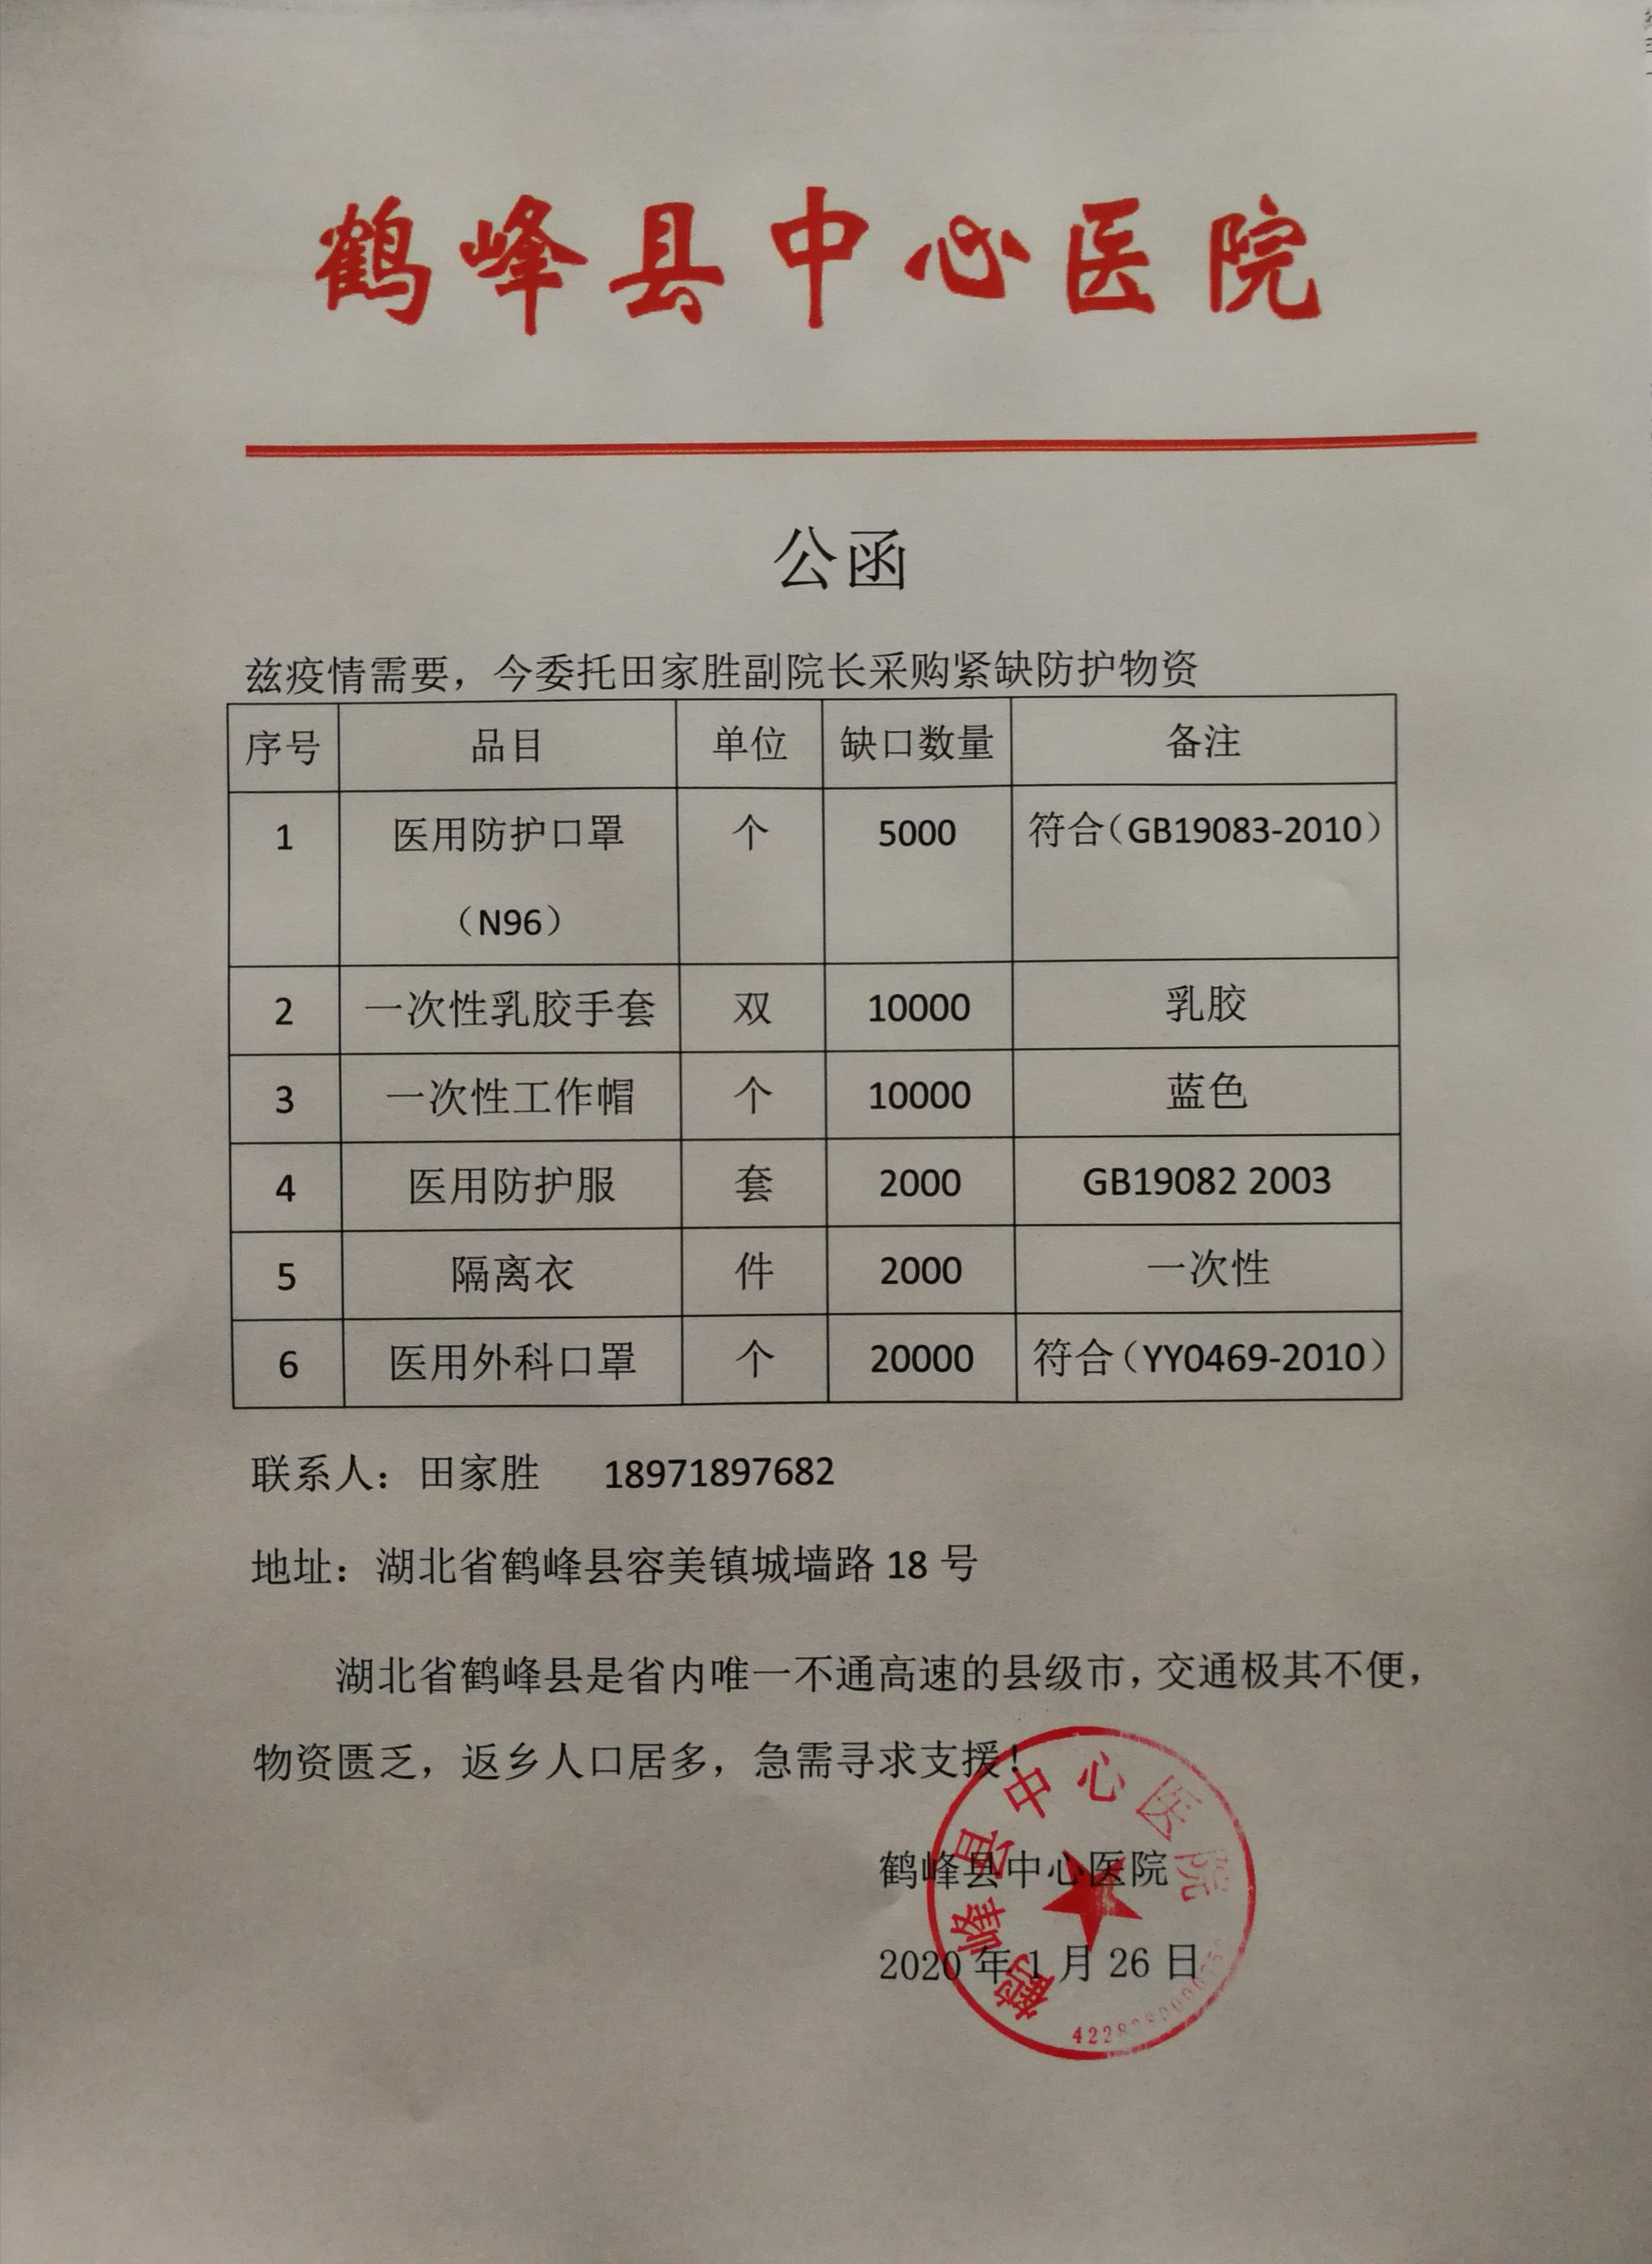 鹤峰县中心医院的捐助公告。 受访者供图